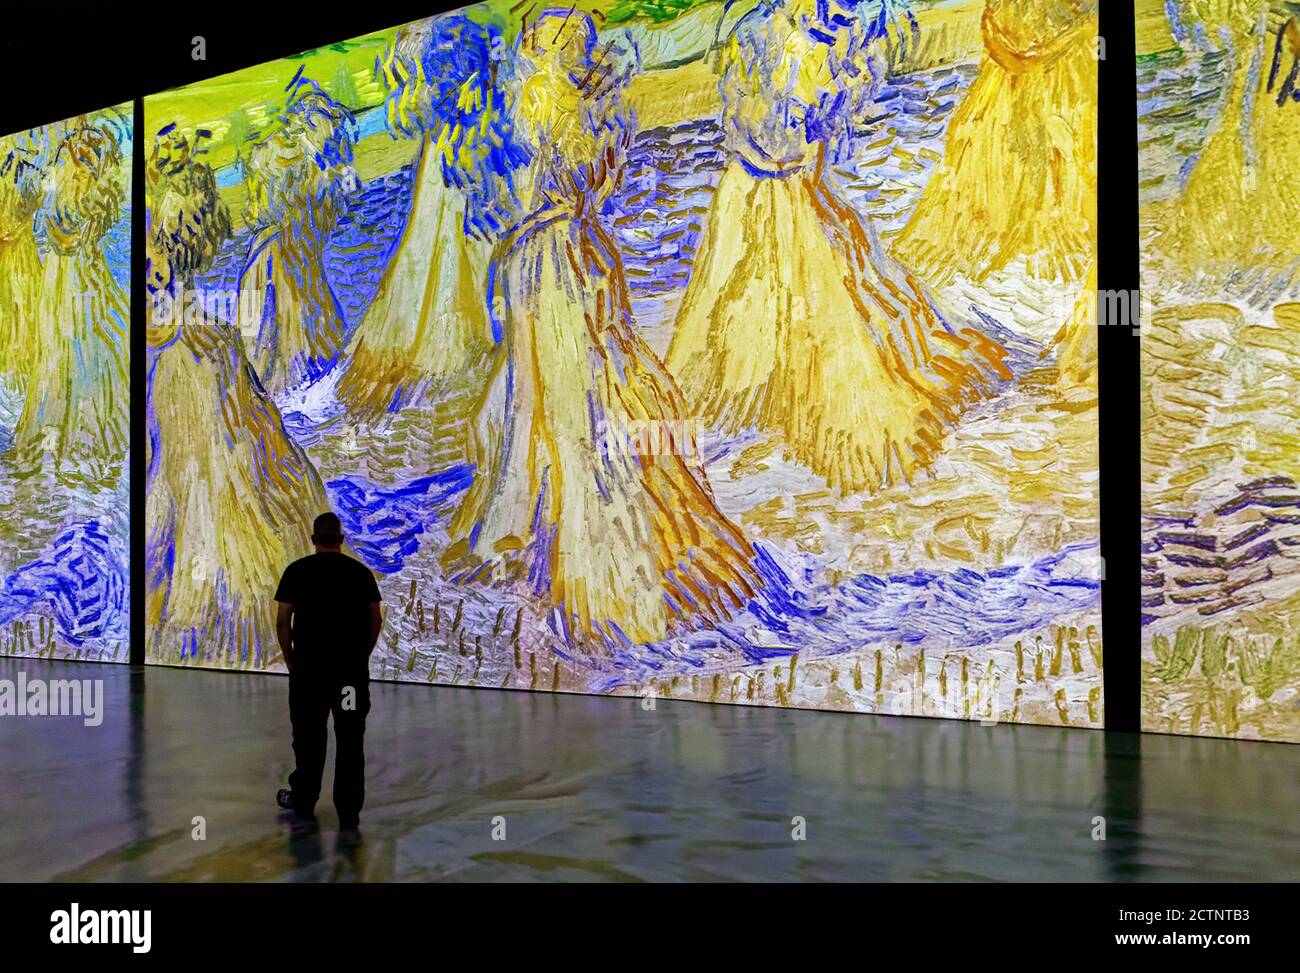 Gente en la exposición inmersiva Imagine Van Gogh en la ciudad de Quebec, Canadá Foto de stock